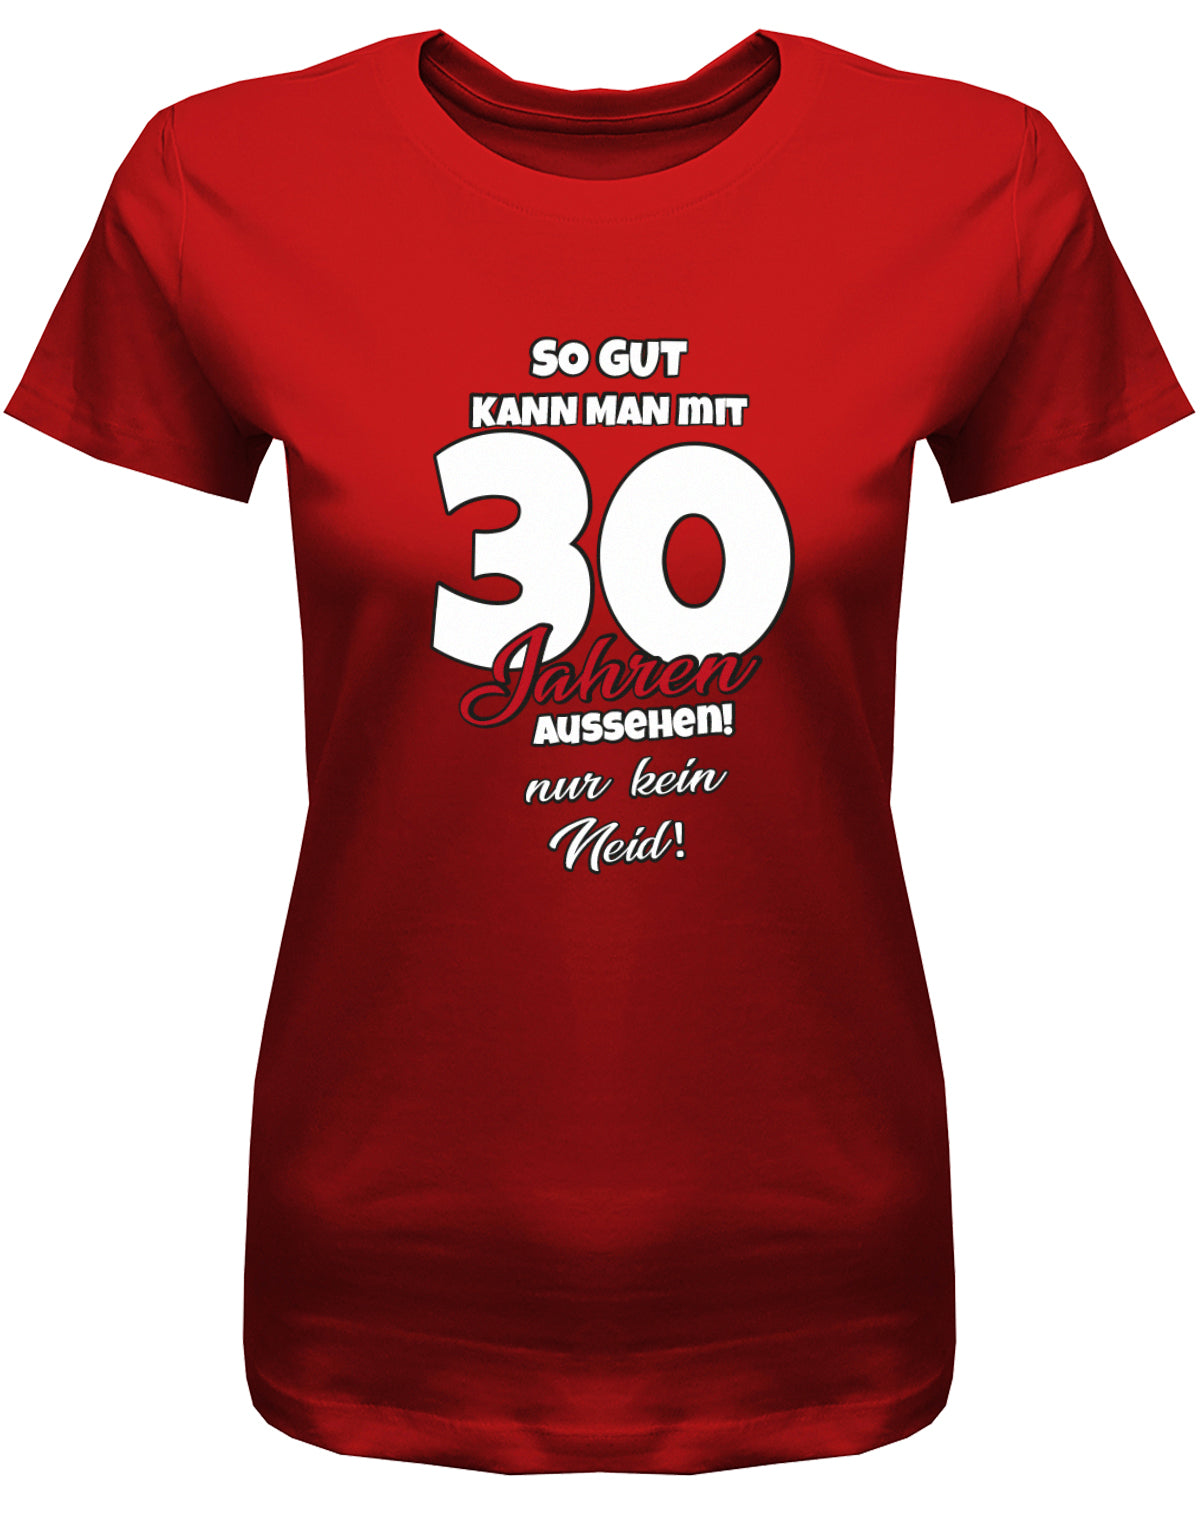 Lustiges T-Shirt zum 30 Geburtstag für die Frau Bedruckt mit So gut kann man mit 30 Jahren aussehen! Nur kein Neid! Rot